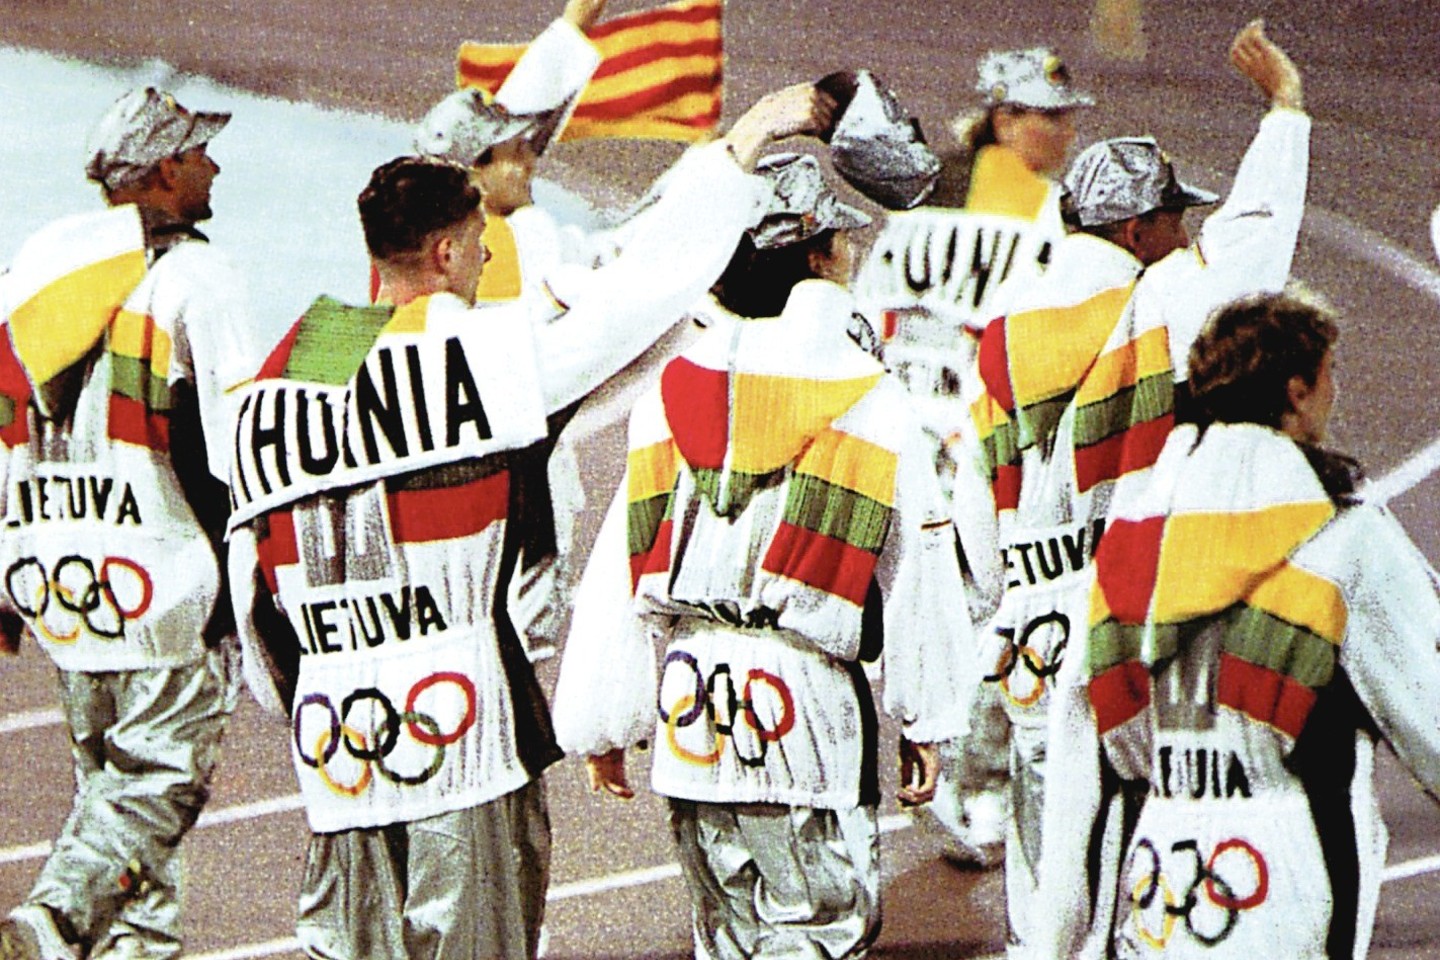 1992 metais per Barselonos žaidynių atidarymą į olimpinį judėjimą po 64 metų grįžę lietuviai žygiavo su garsaus japonų dizainerio I.Miyake dovanota apranga.<br>Nuotr. iš LR archyvo